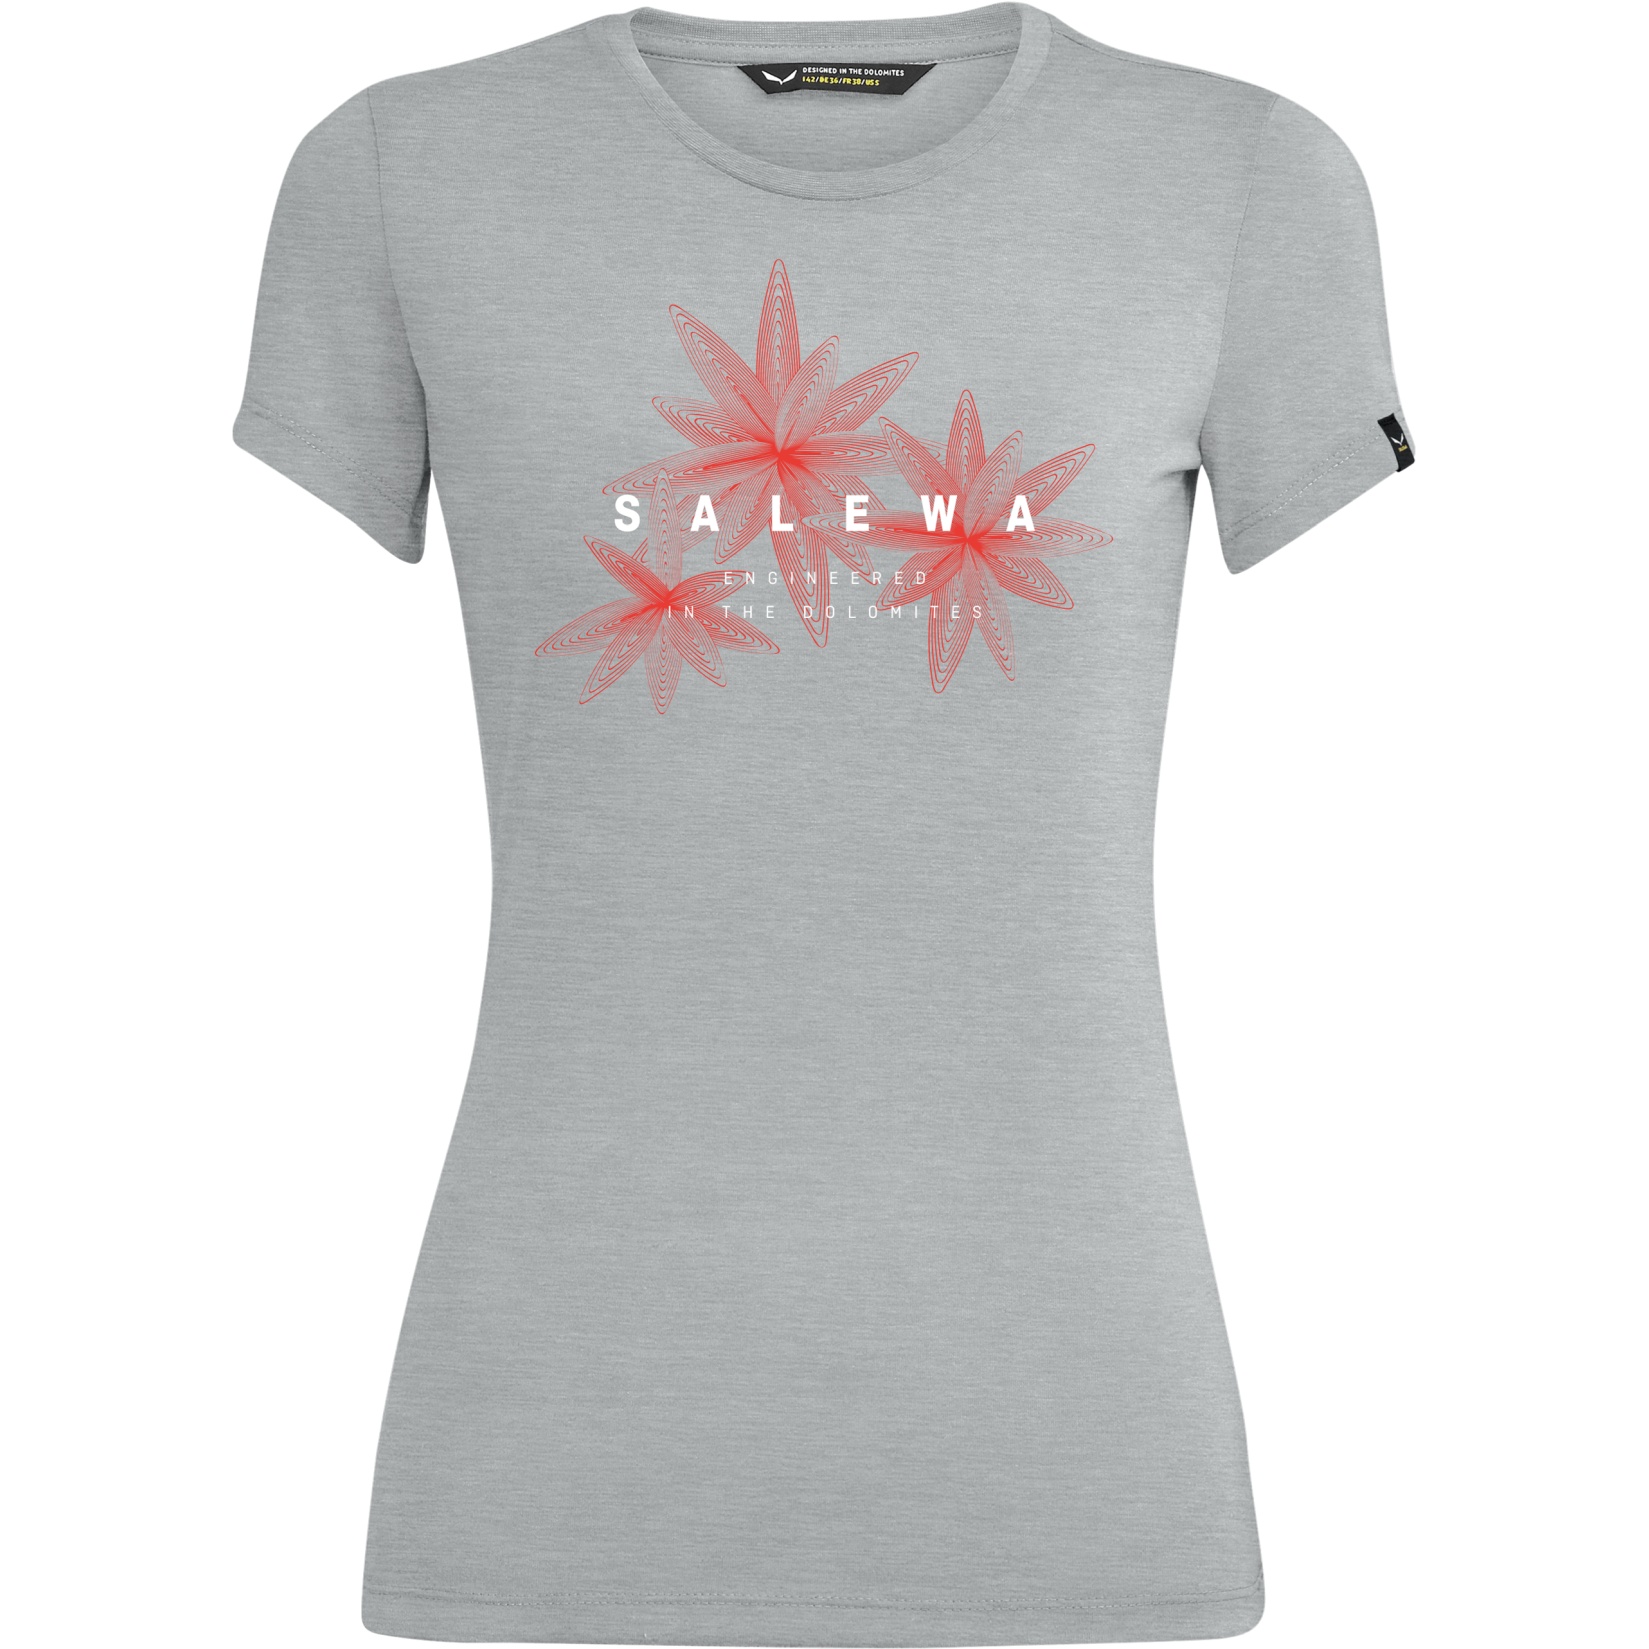 Produktbild von Salewa Lines Graphic Dry T-Shirt Damen - heather grey melange/flowers 626